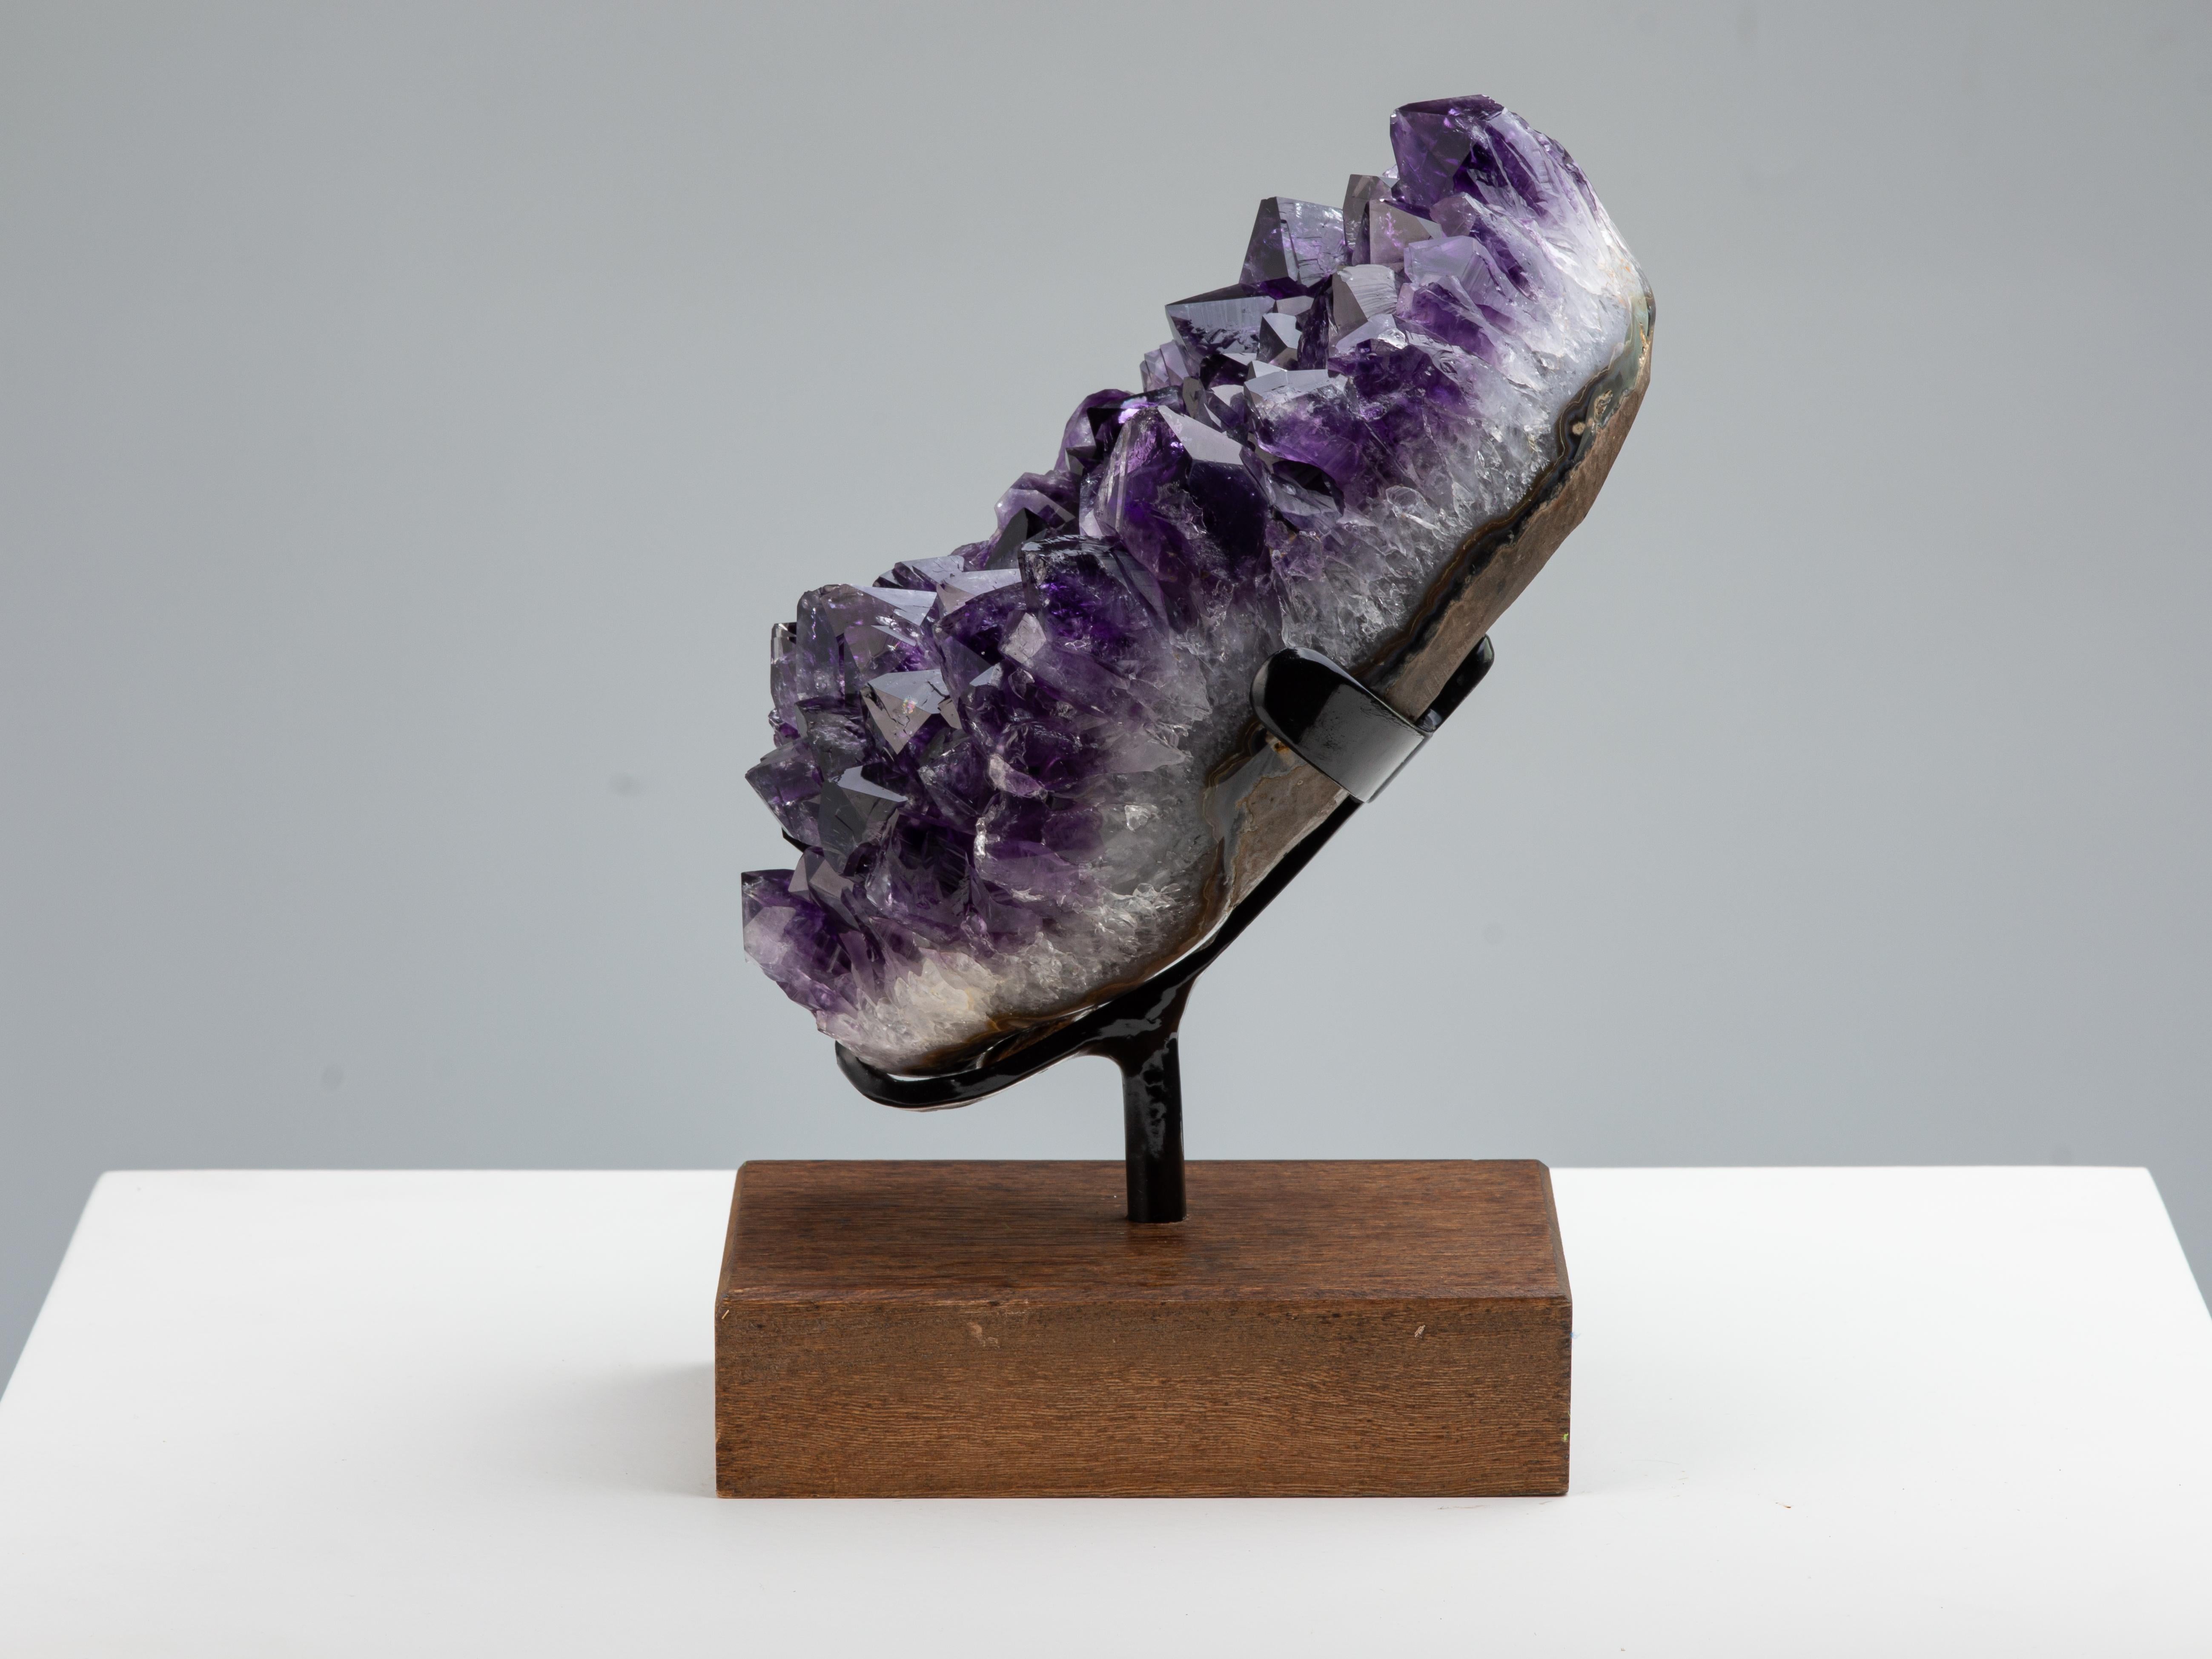 Une magnifique grappe d'améthyste d'un violet profond avec des cristaux à hauts sommets. Le cadre poli montre des couches minérales se développant à partir du basalte brut, de l'agate grise/bleue, de l'épaisse couche de quartz blanc et enfin du